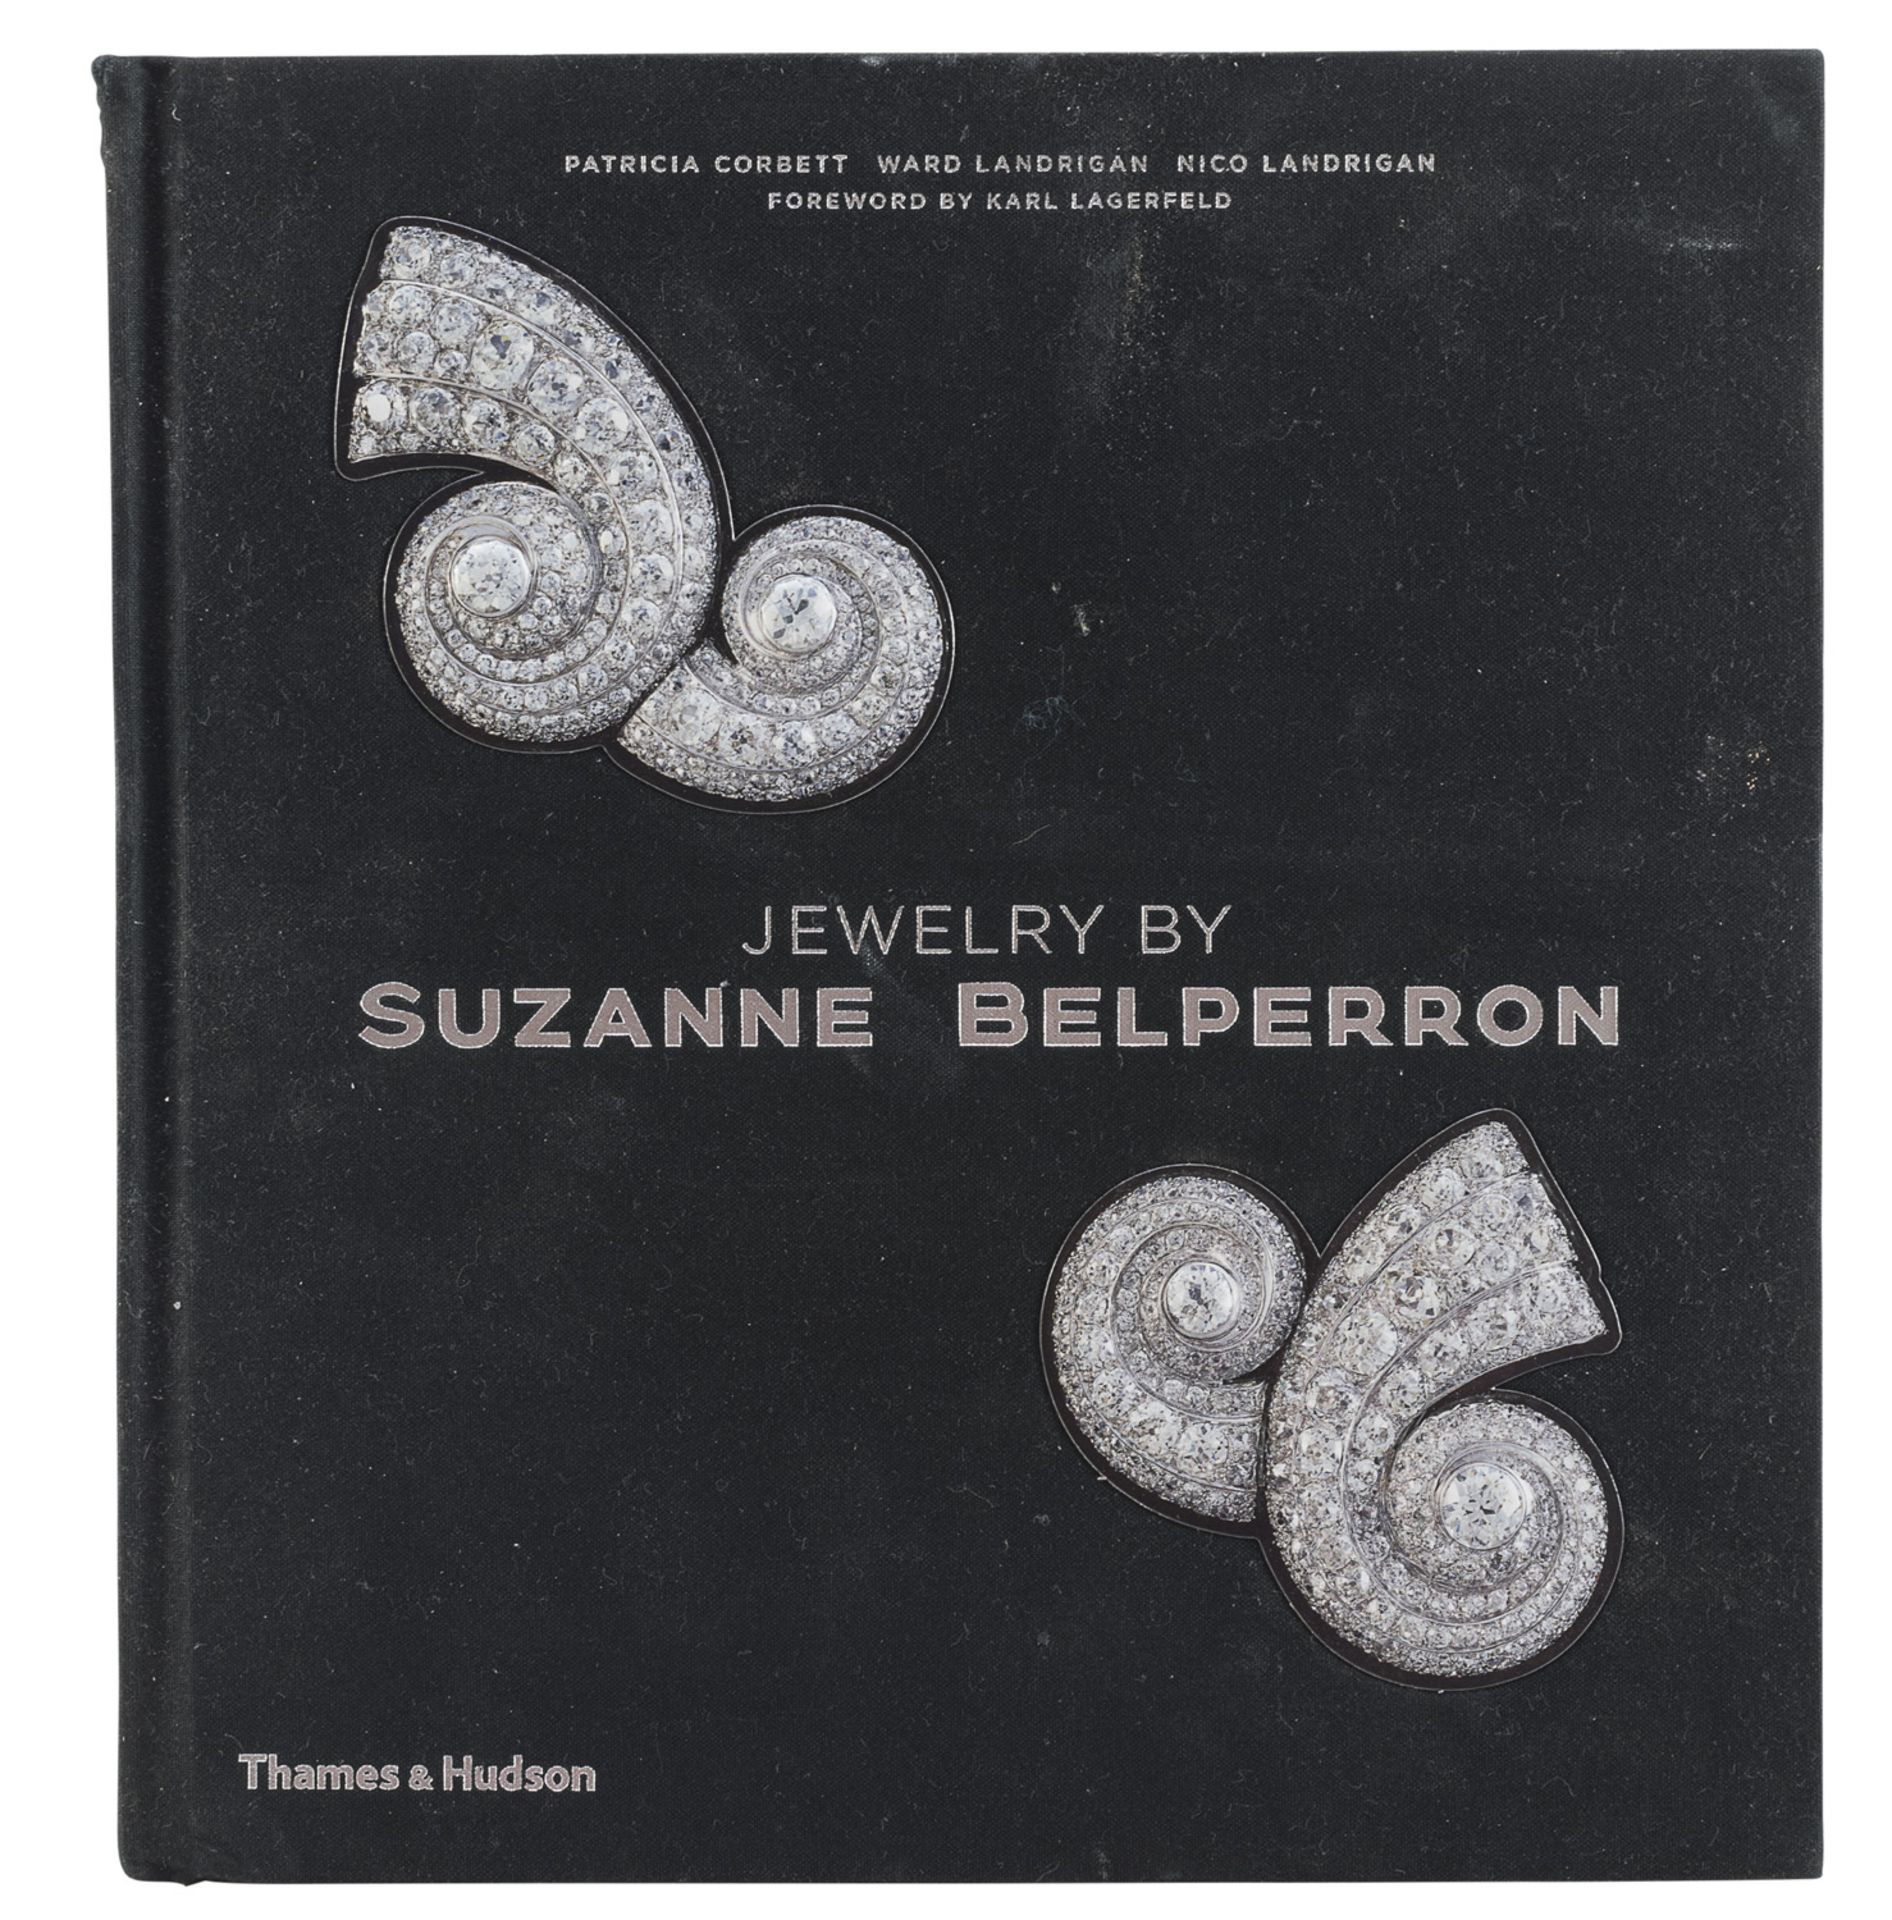 KARL LAGERFELD JEWELRY' BY SUZANNE BELPERRON 2015